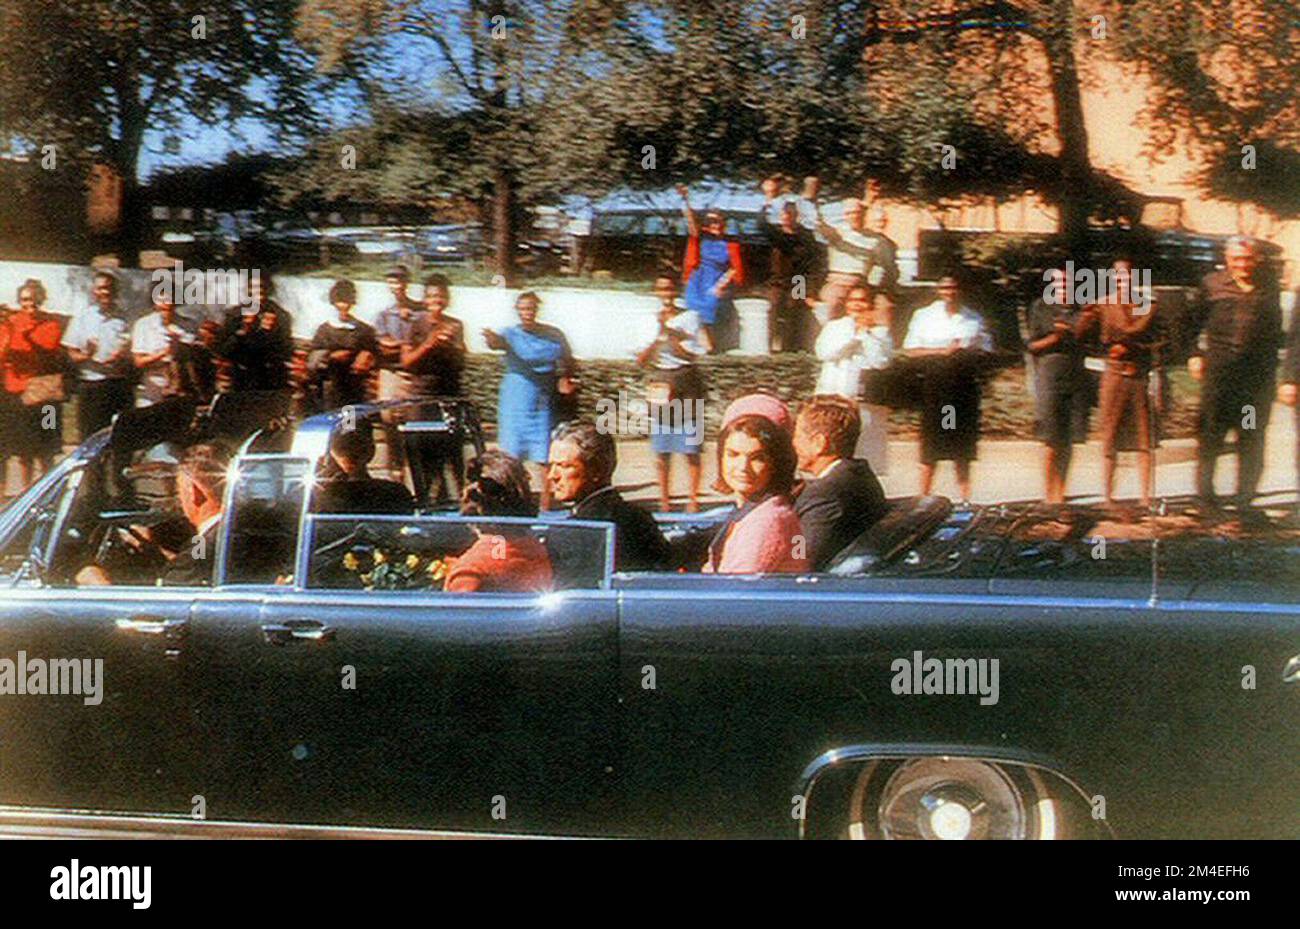 Ein Foto, aufgenommen von dem Zuschauer Robert Croft, das JFK's Auto in der Elm Street zeigt, nur wenige Sekunden vor dem Attentat. Stockfoto